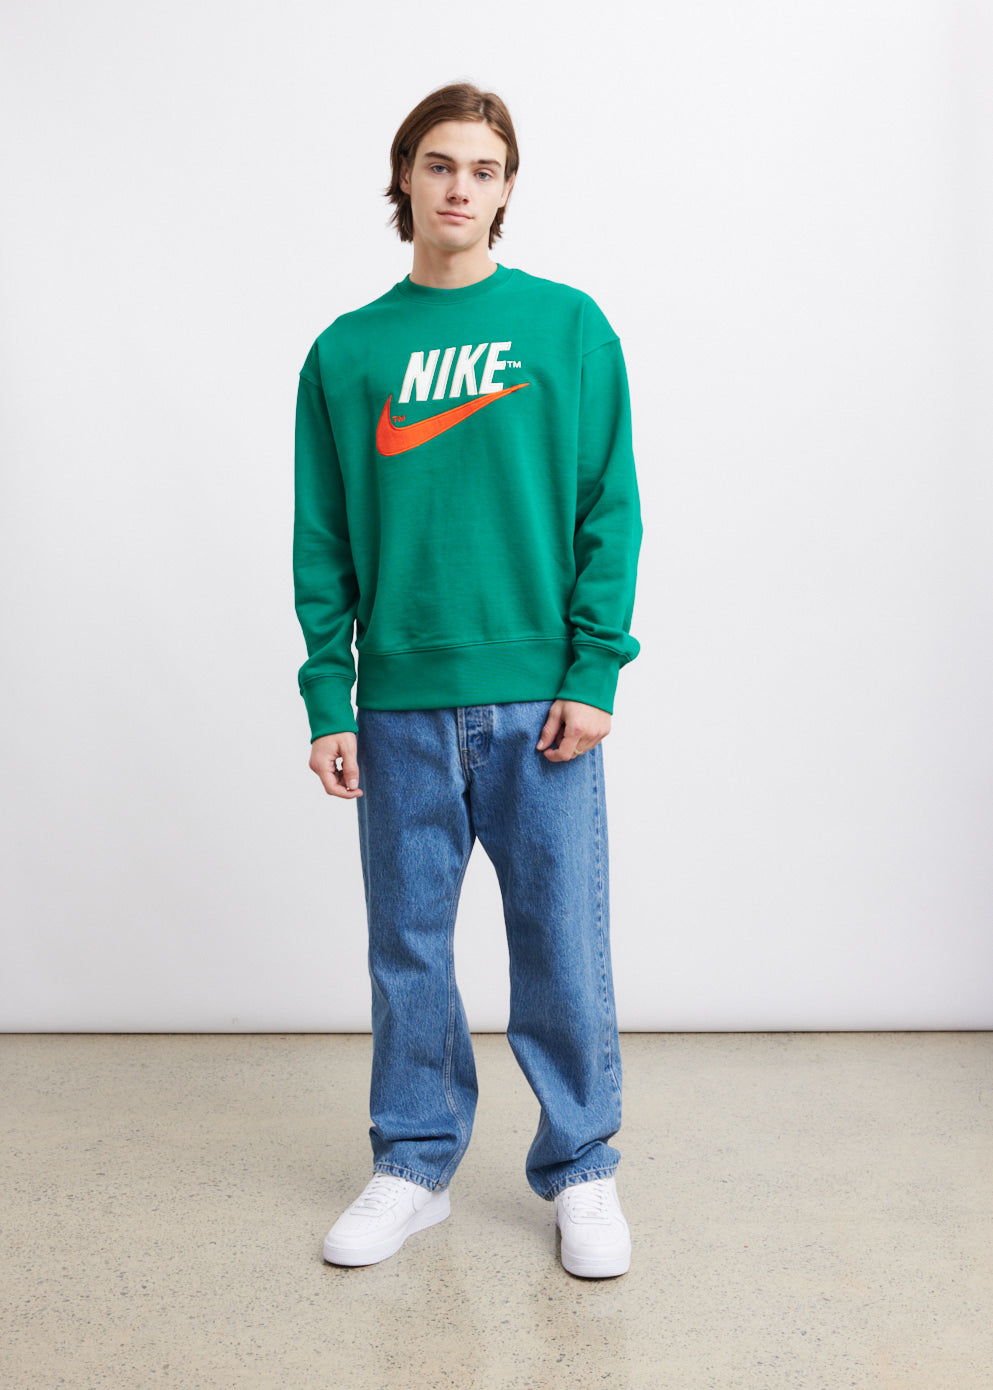 Trend Fleece Crewneck Sweatshirt